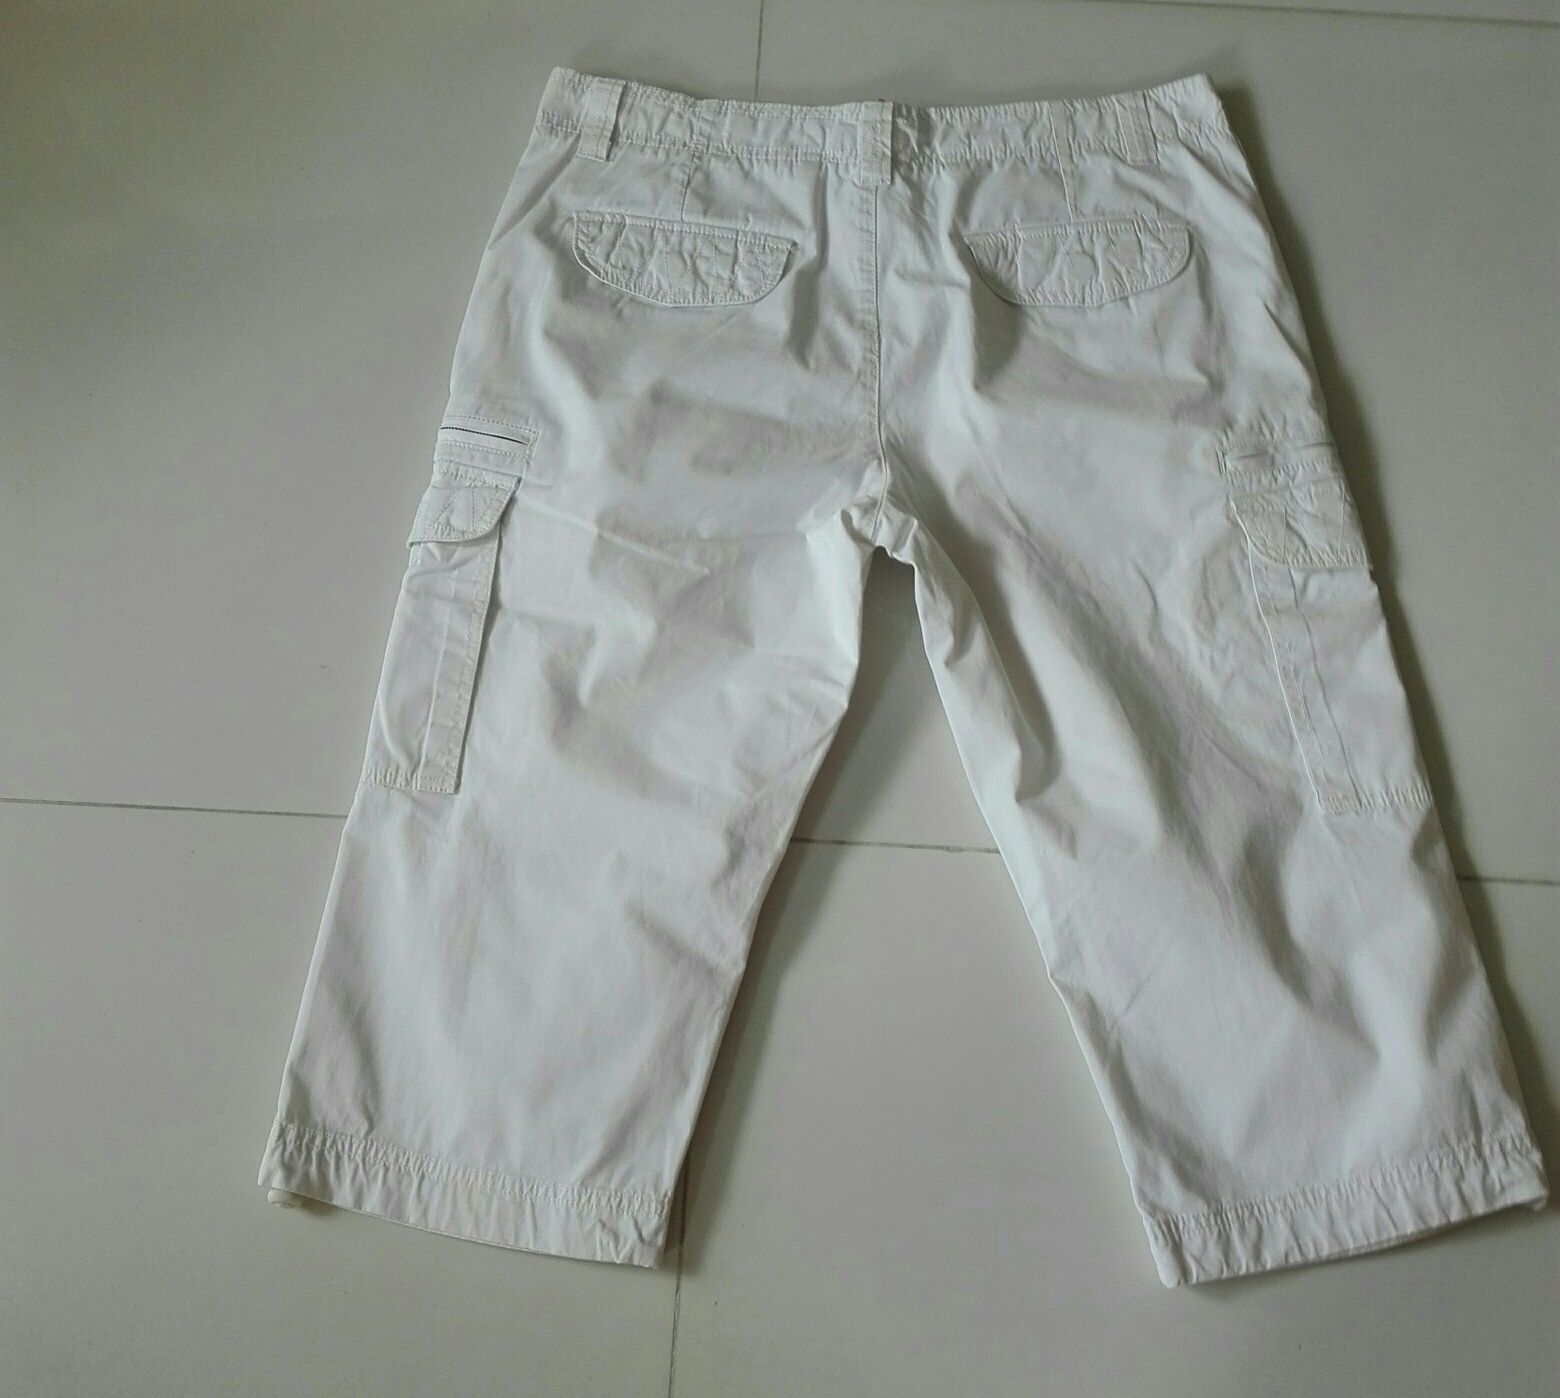 Atlant białe spodnie 3/4 rozmiar L, pas 90 cm